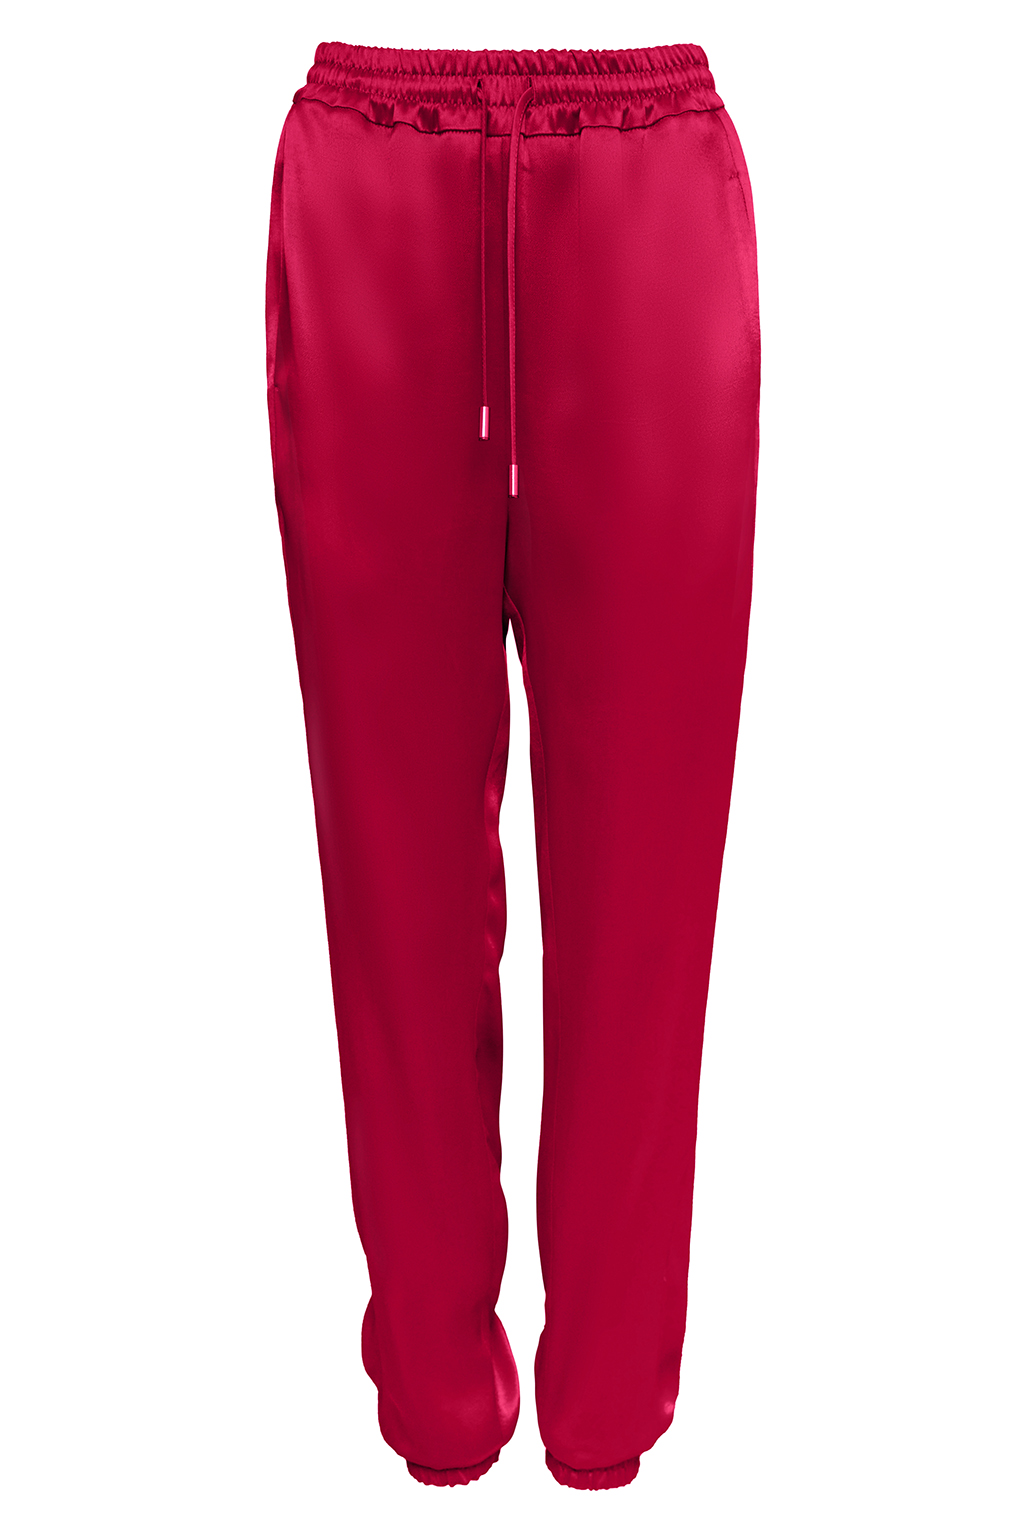 фото Спортивные брюки женские paola ray pr121-5029 красные xl